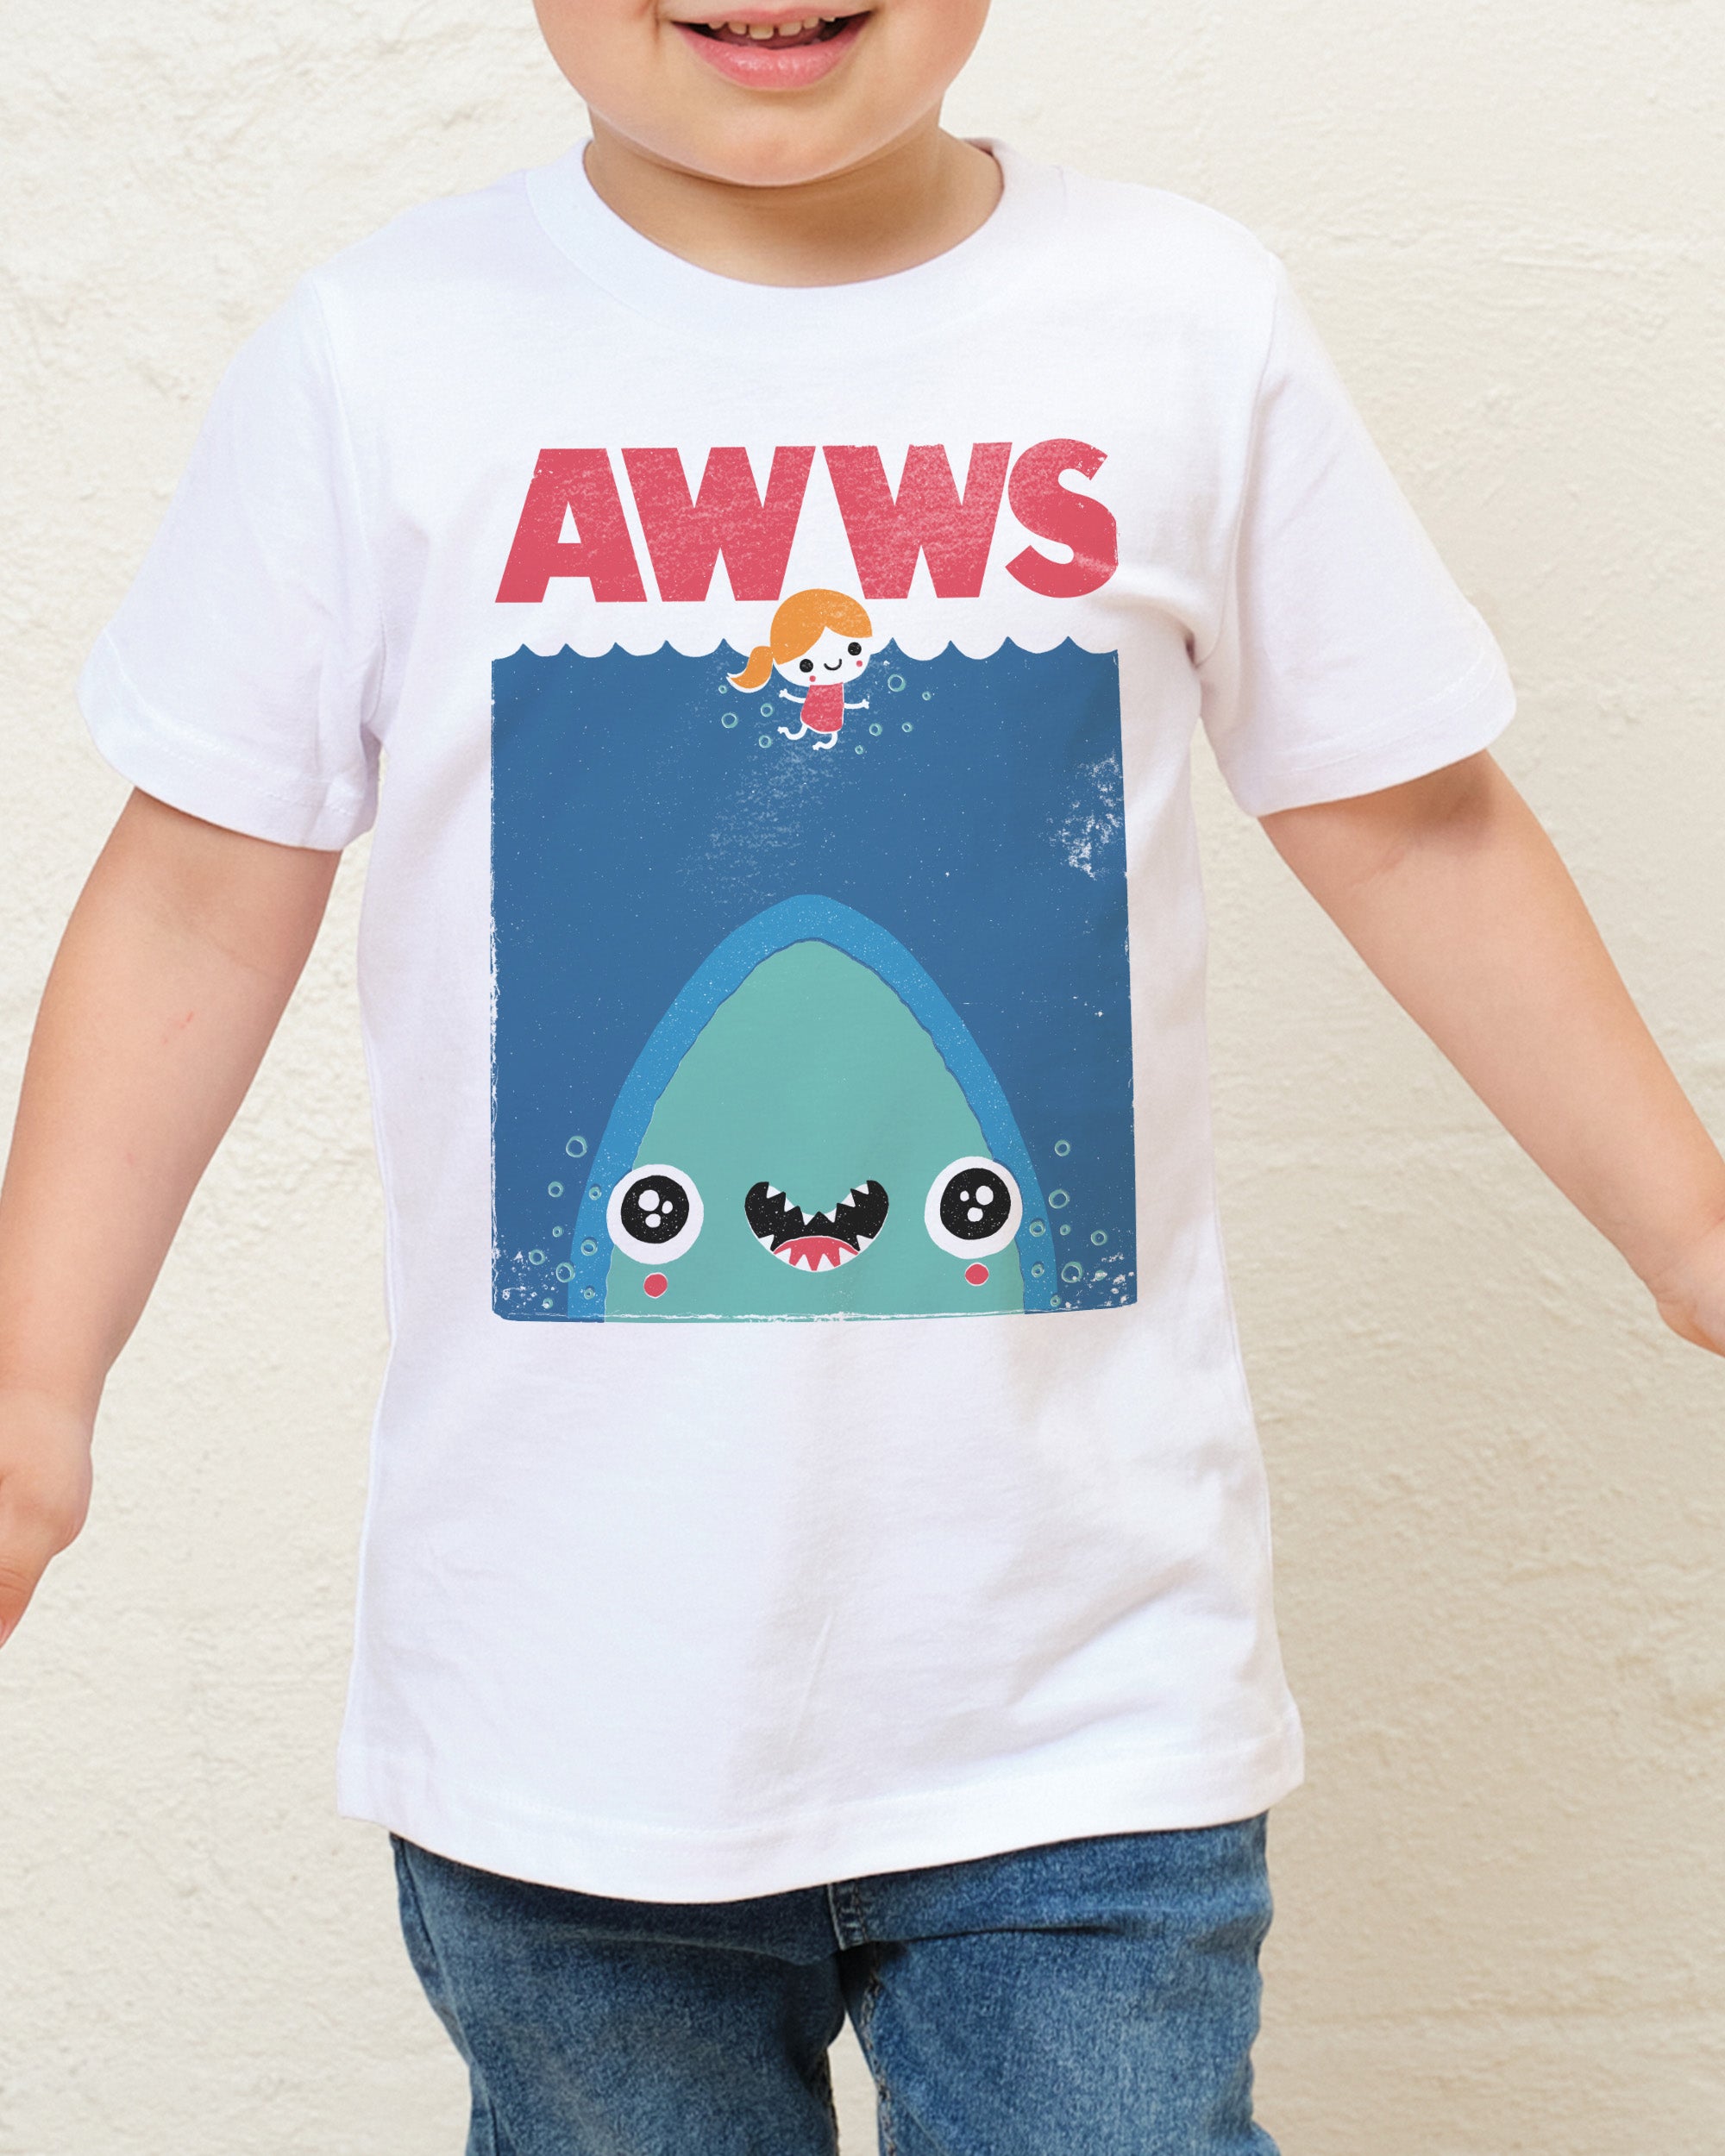 AWWS Kids T-Shirt